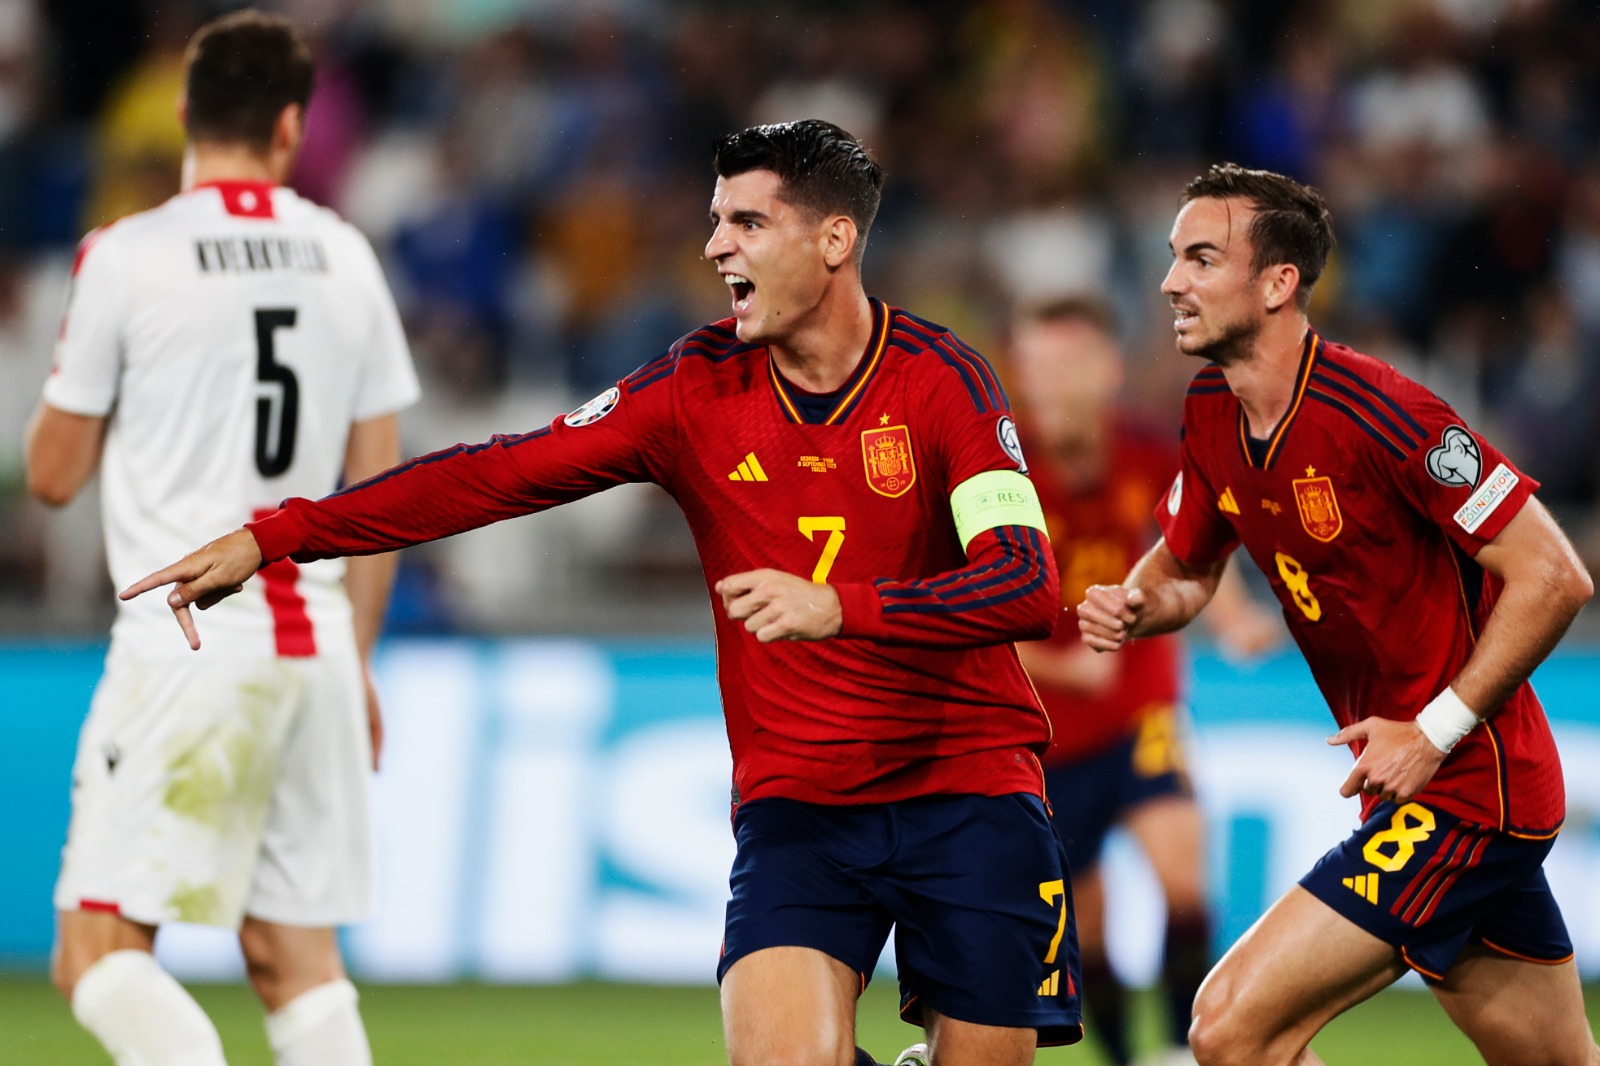 Com hat-trick de Morata, Espanha atropela a Geórgia